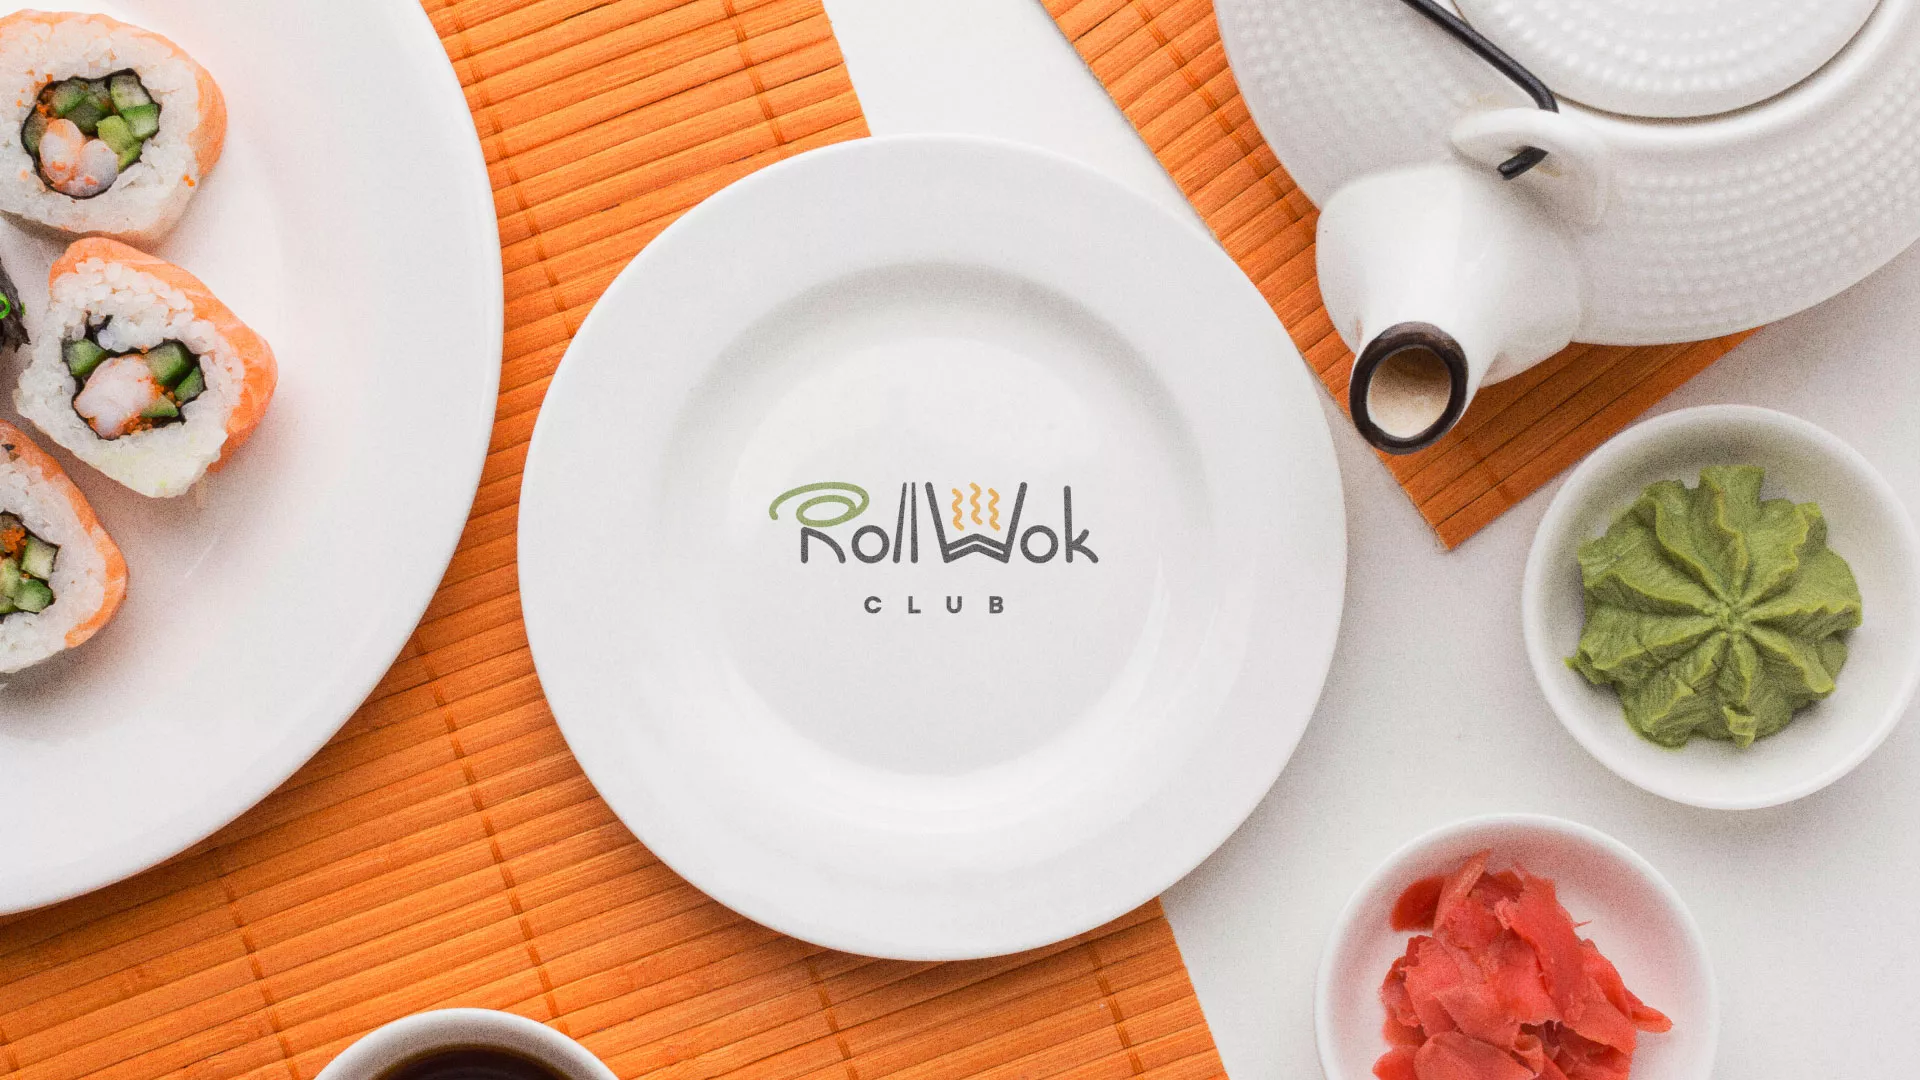 Разработка логотипа и фирменного стиля суши-бара «Roll Wok Club» в Велиже